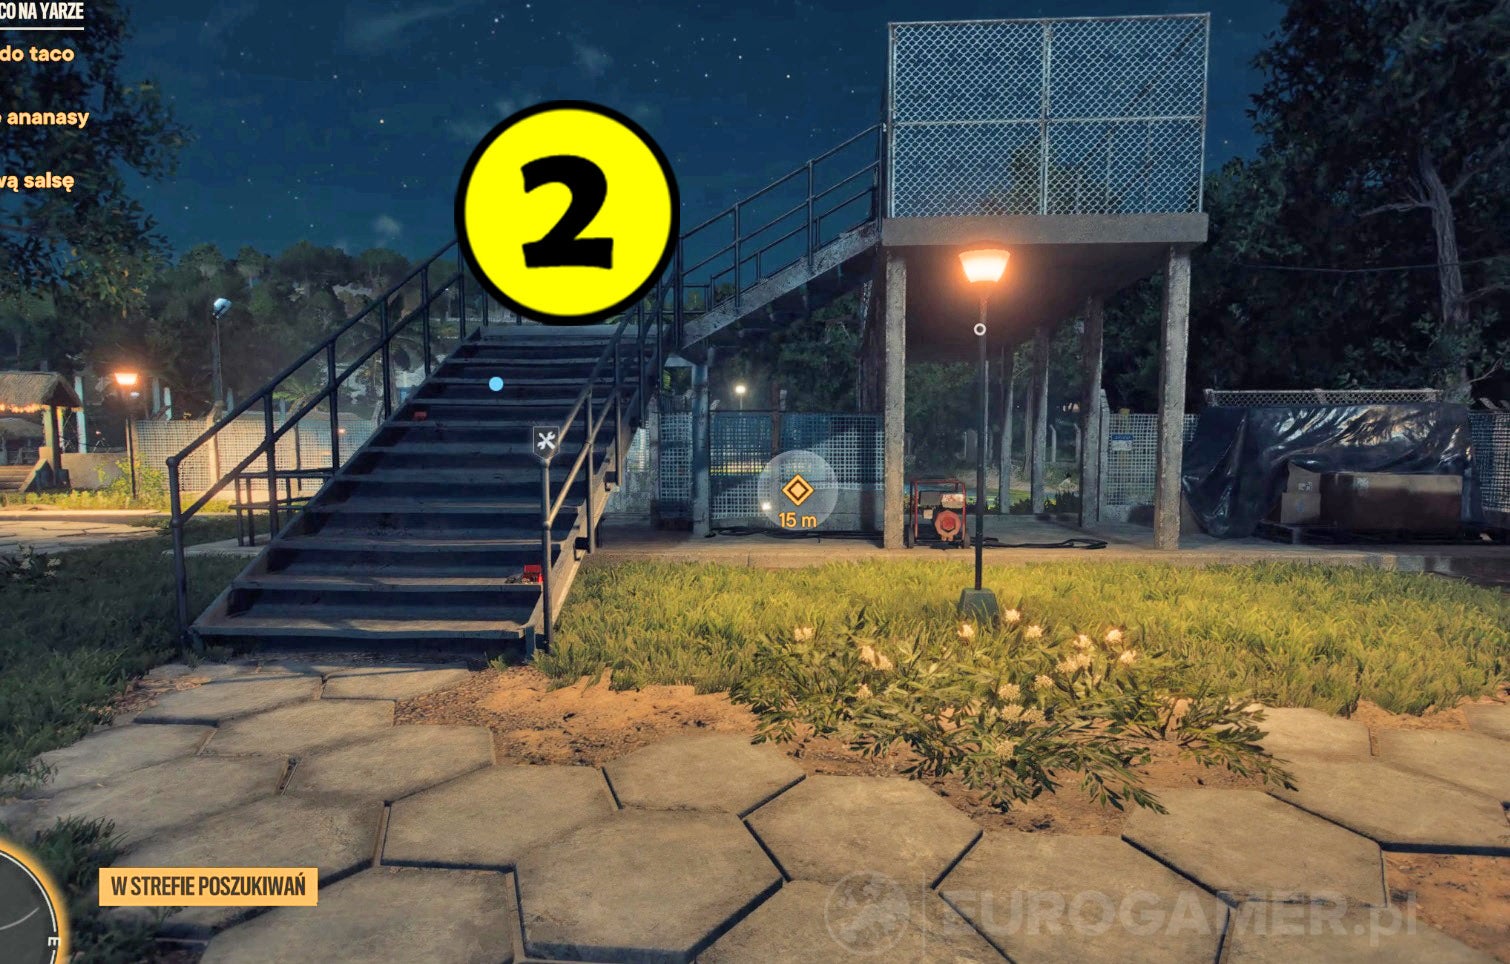 Obrazki dla Far Cry 6 - Wielka draka z Taco na Yarze